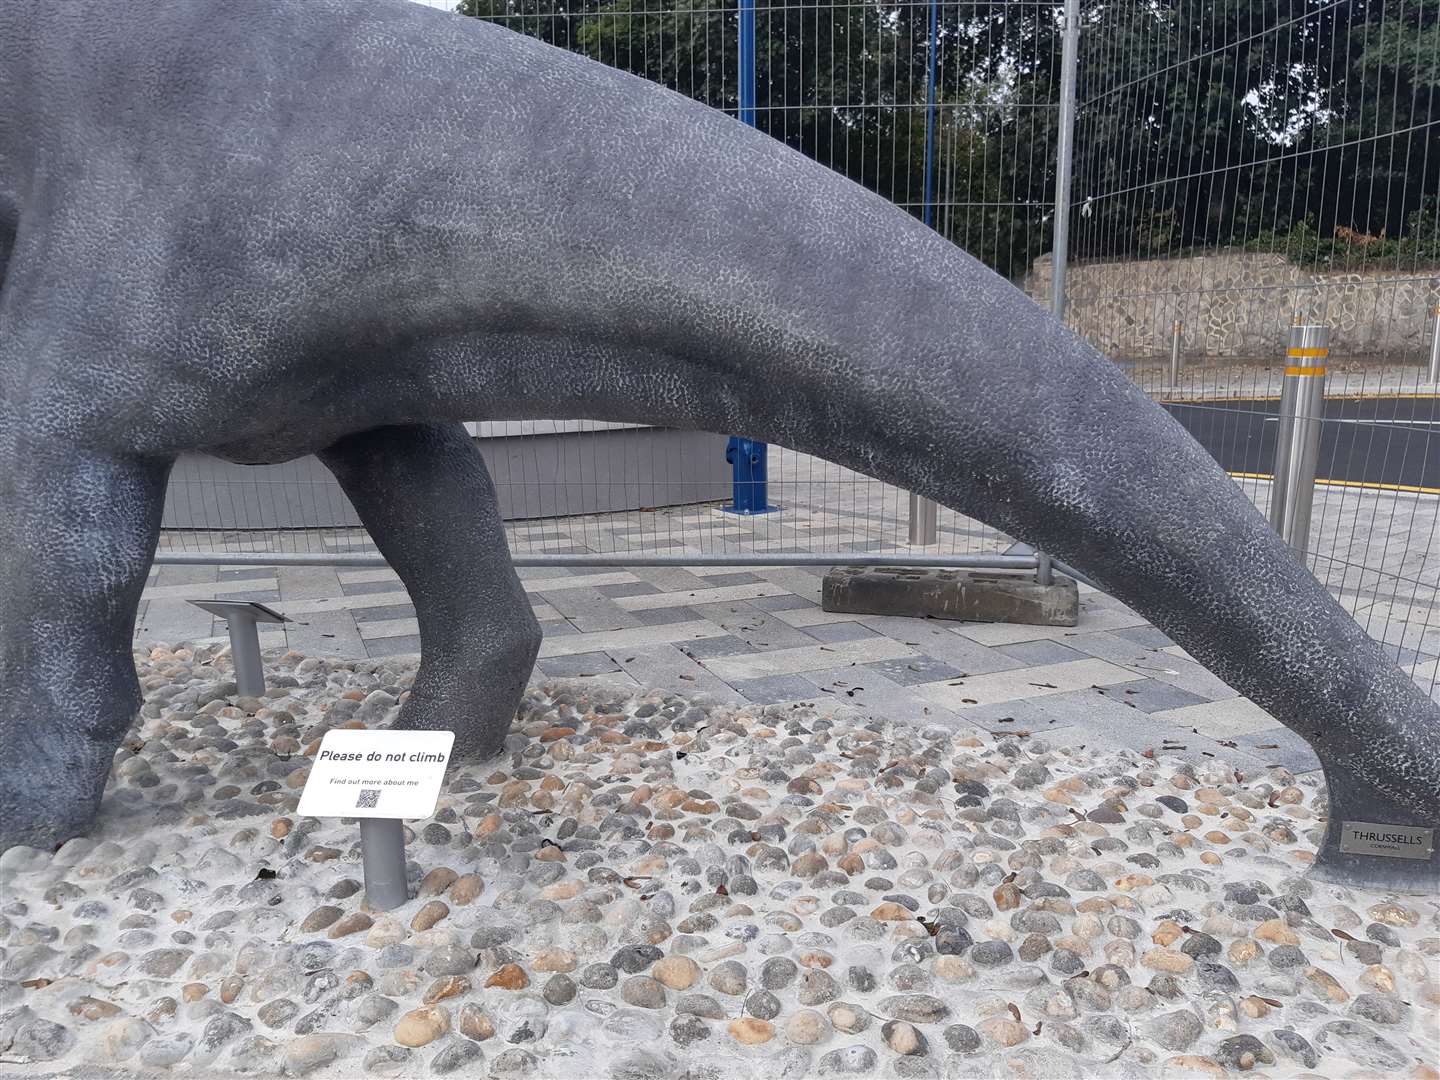 The Mantellisaurus at Maidstone East Station lacks genitalia